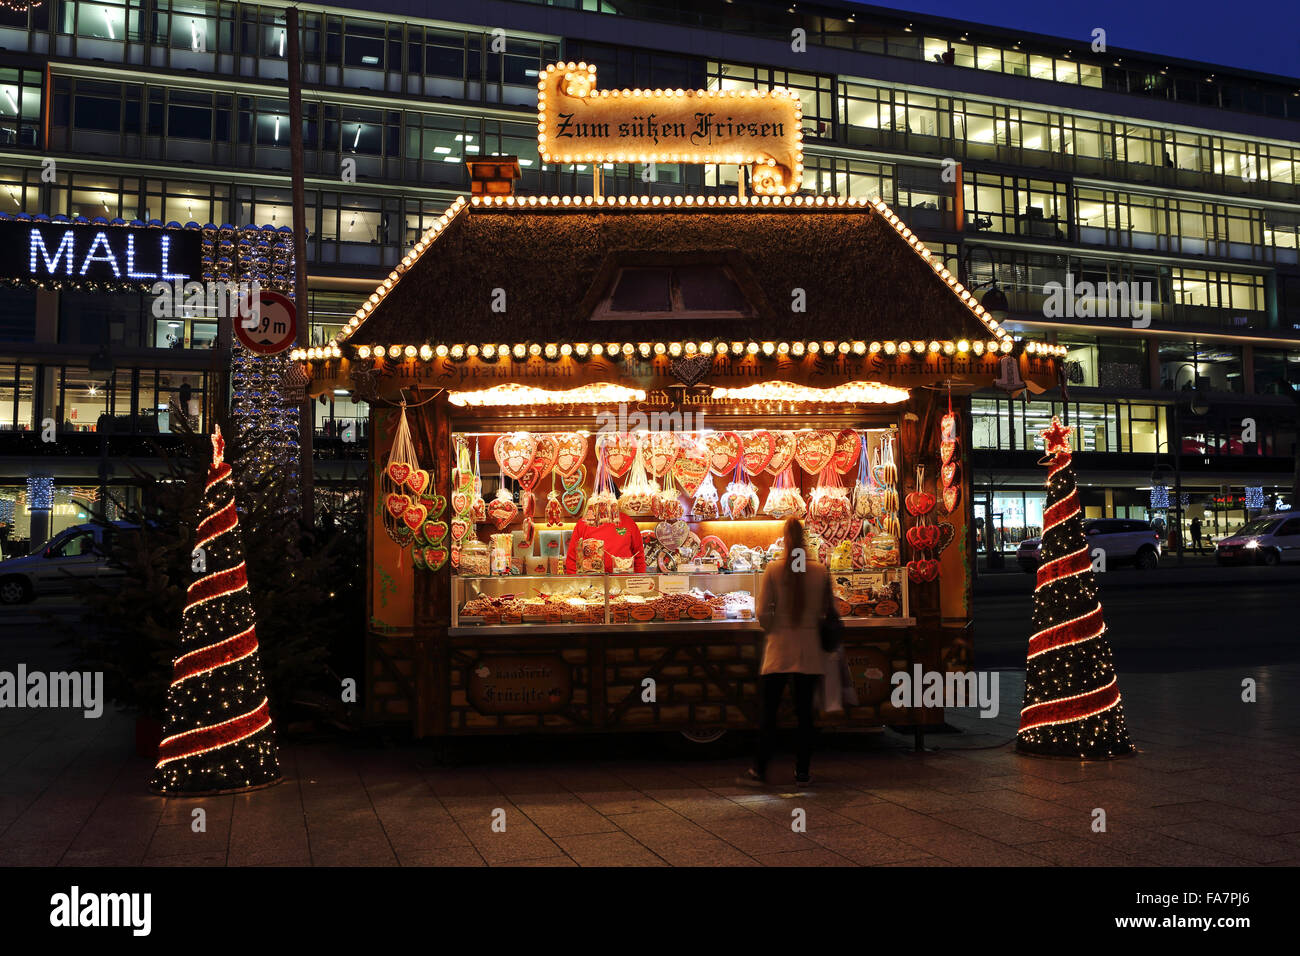 Ein Stall zu verkaufen Lebkuchenherzen auf der Stadt-Weihnachtsmarkt bin Gedachtniskirche Weihnachtsmarkt am Ku'damm in Berlin. Stockfoto